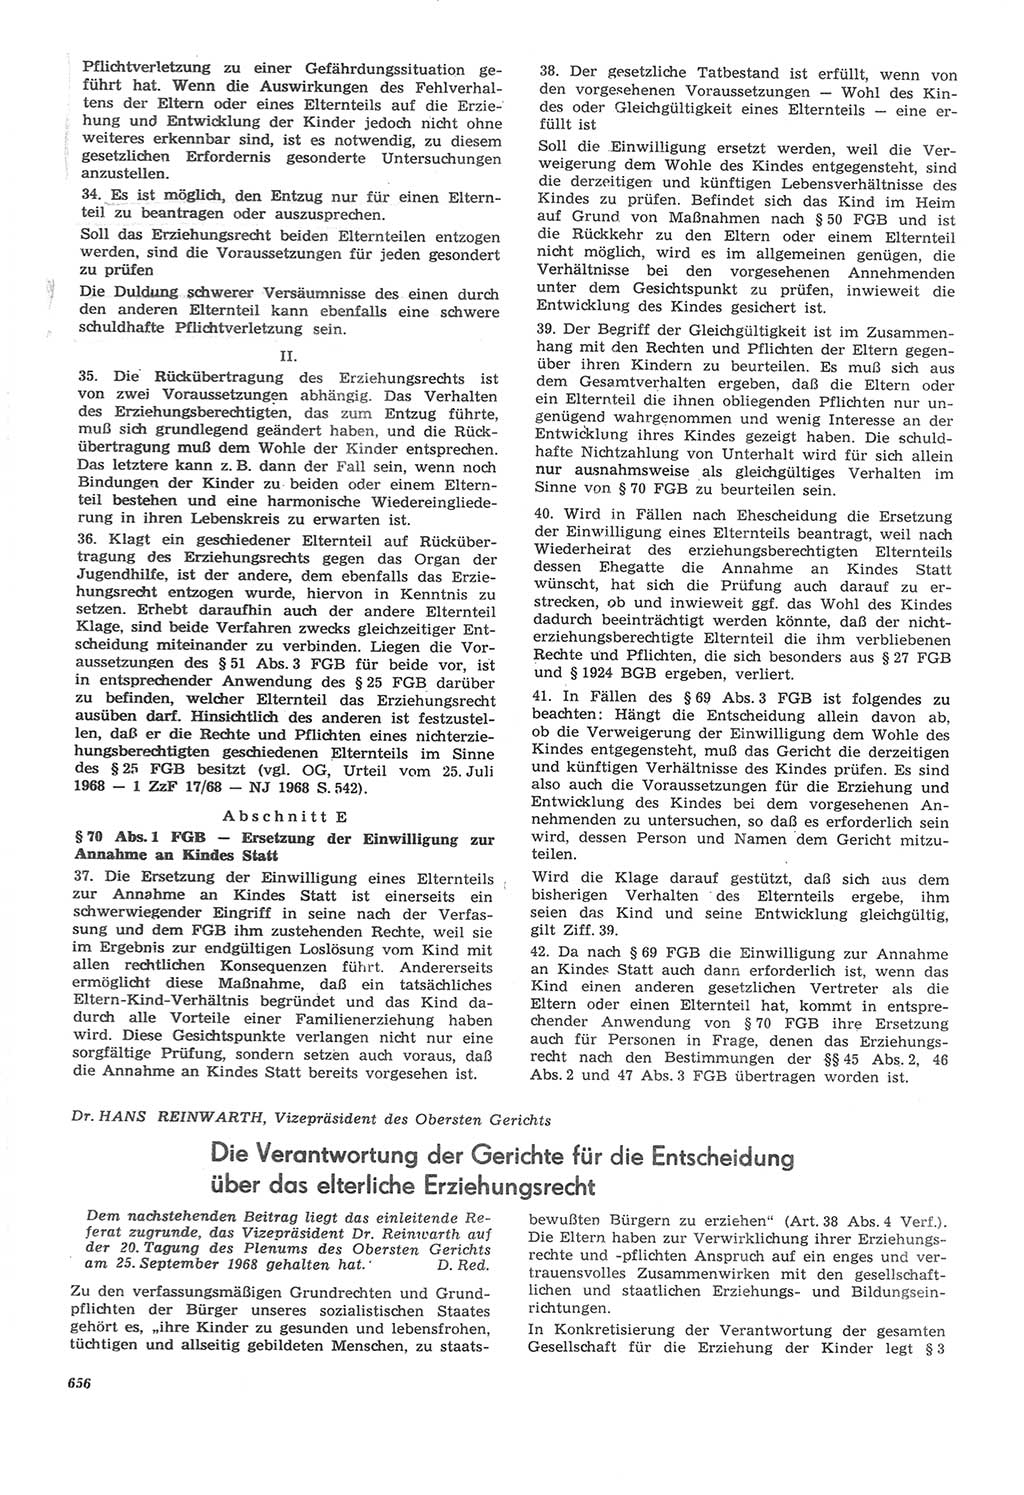 Neue Justiz (NJ), Zeitschrift für Recht und Rechtswissenschaft [Deutsche Demokratische Republik (DDR)], 22. Jahrgang 1968, Seite 656 (NJ DDR 1968, S. 656)